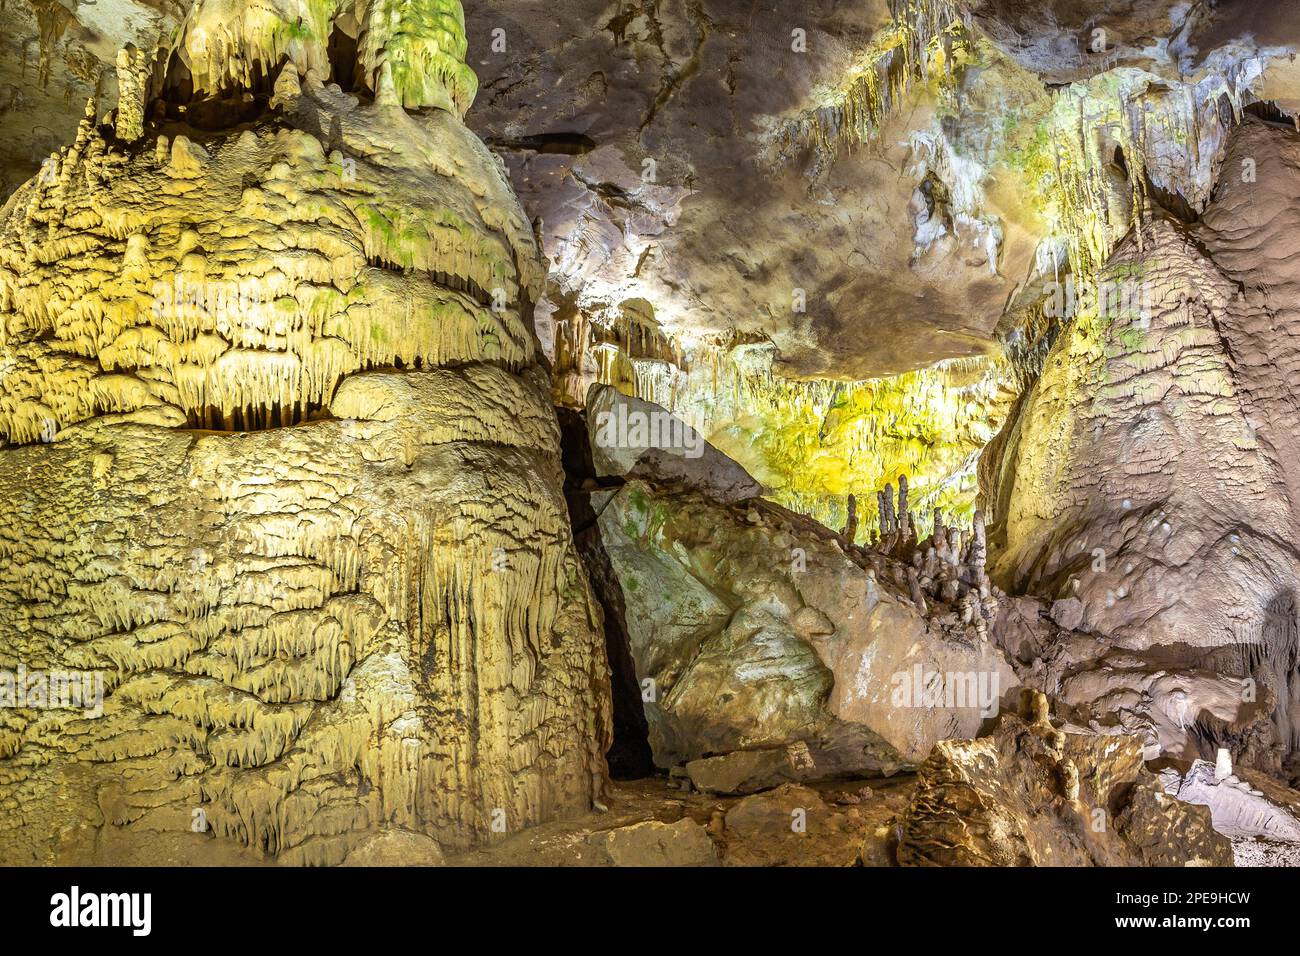 Prometheus Cave Natural Monument - die größte Höhle in Georgia mit versteinerten Wasserfällen, hängenden Steinvorhängen, Stalaktiten und Stalagmiten. Stockfoto